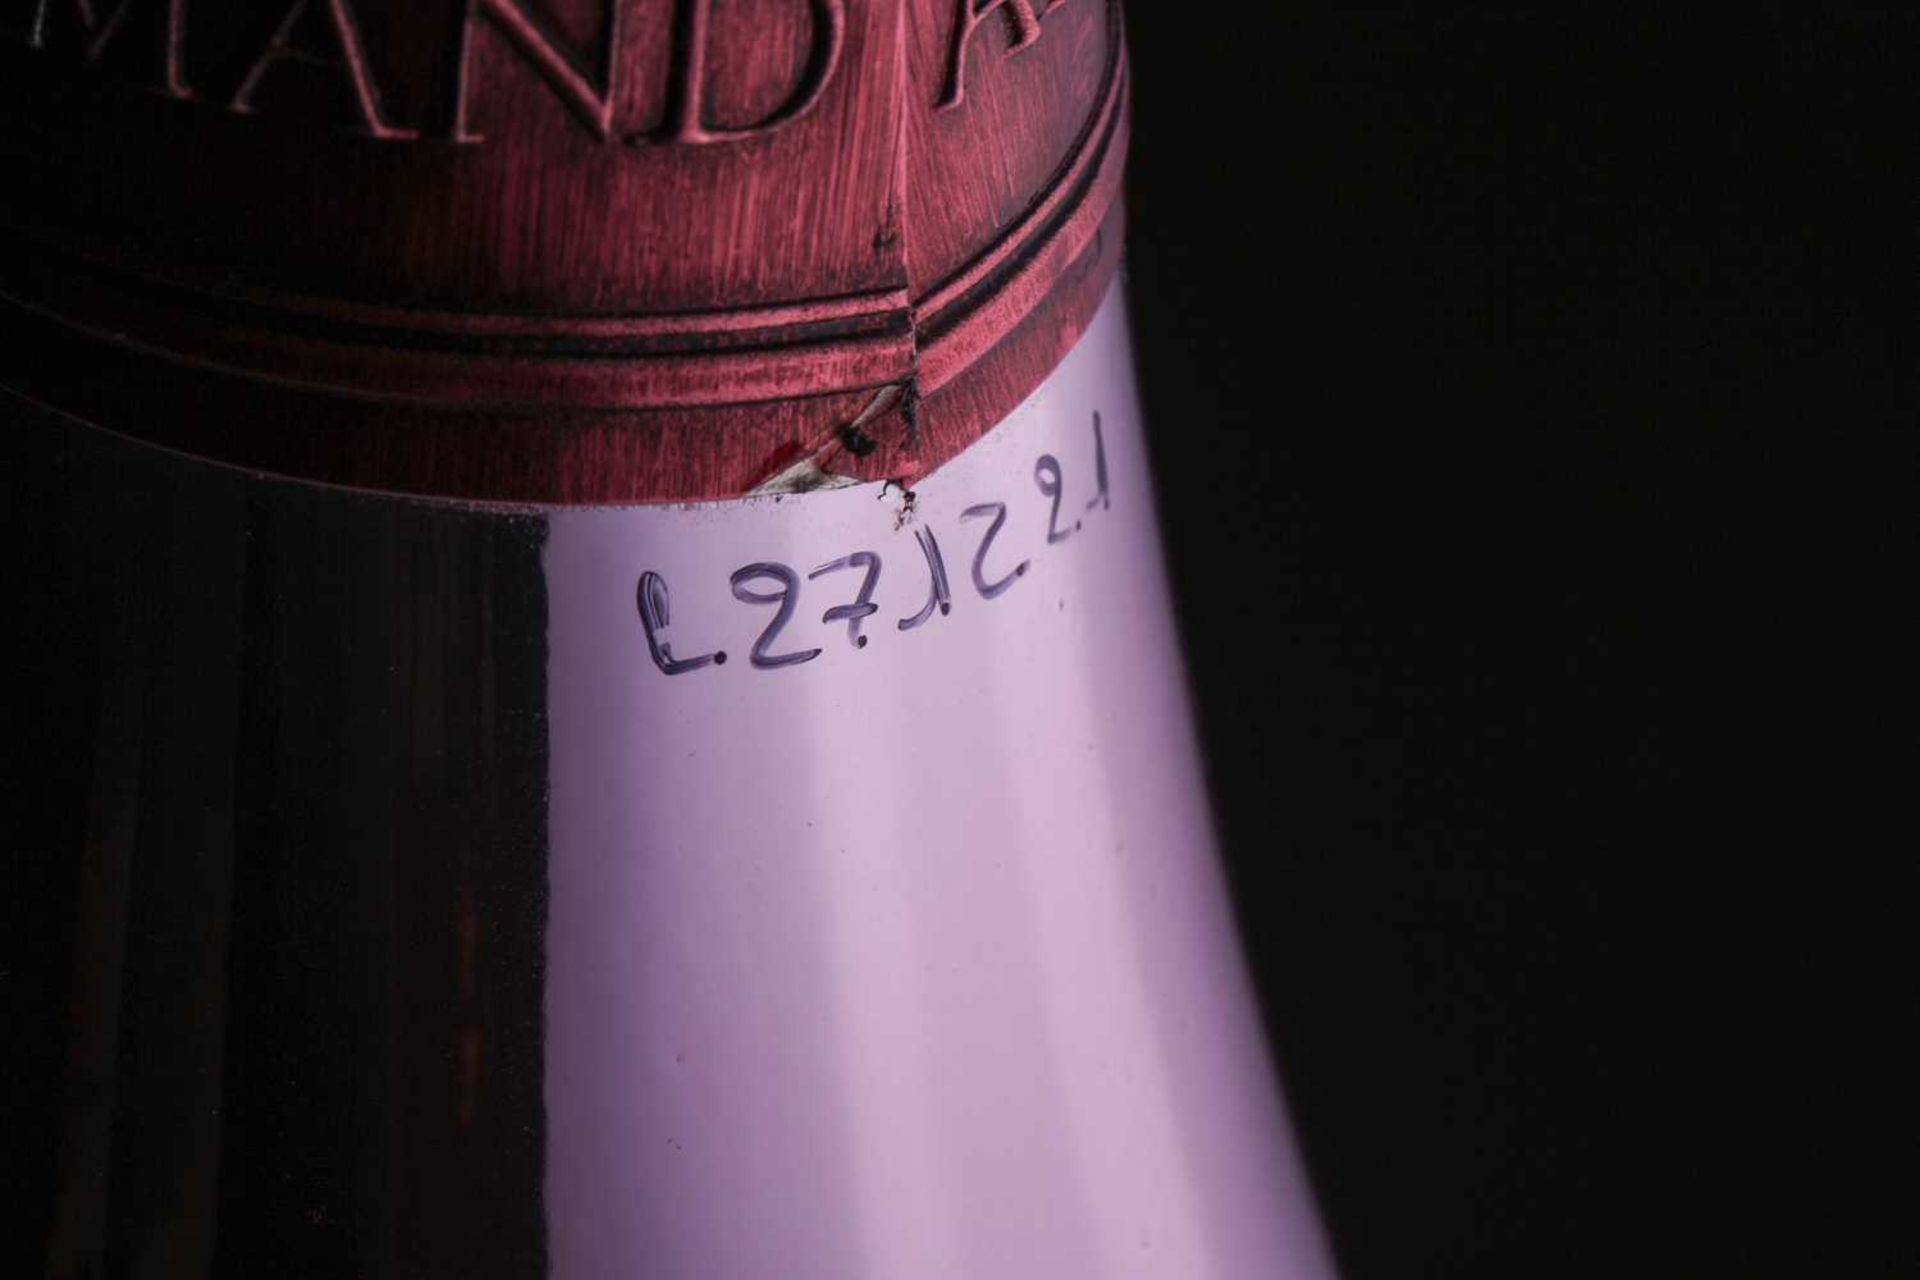 A Jeroboam of Cattier Armand de Brignac Ace of Spades Brut Rose Champagne, 3lt, 12.5%Private - Bild 8 aus 11